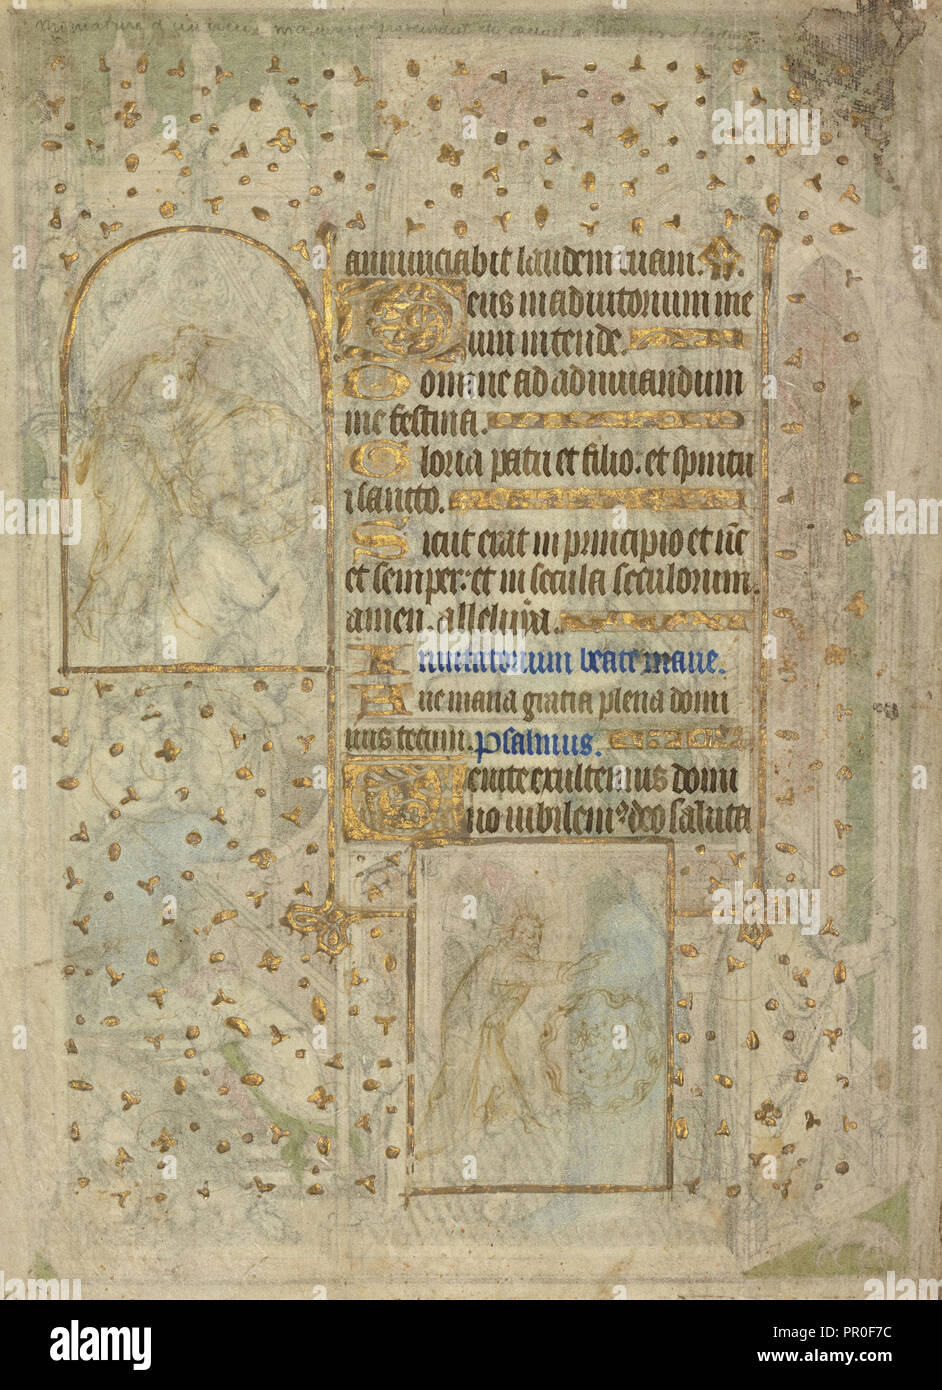 Des scènes de la création, attribués à l'entourage immédiat ou Maître Rohan, français, actif sur 1410 - 1440, Paris, France Banque D'Images